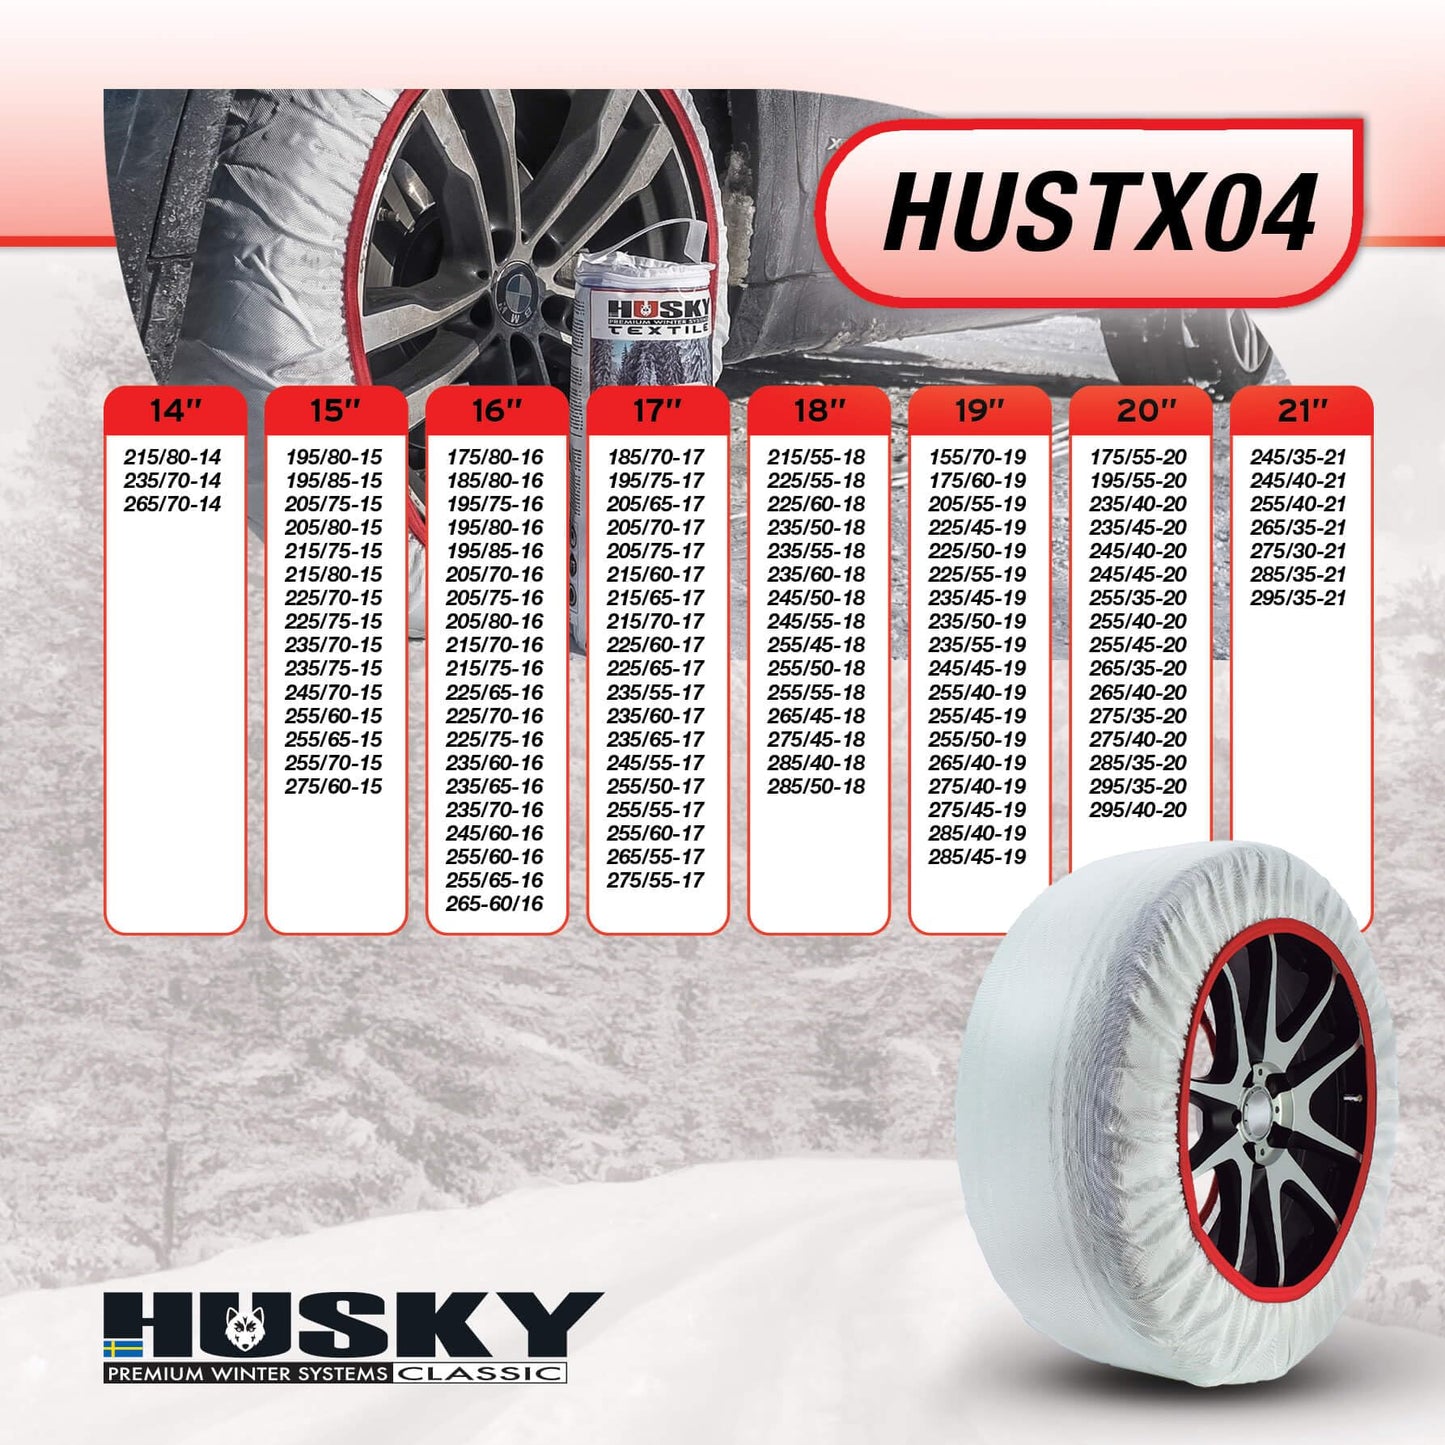 Husky HUSTX04 Snow Chains, White, XL